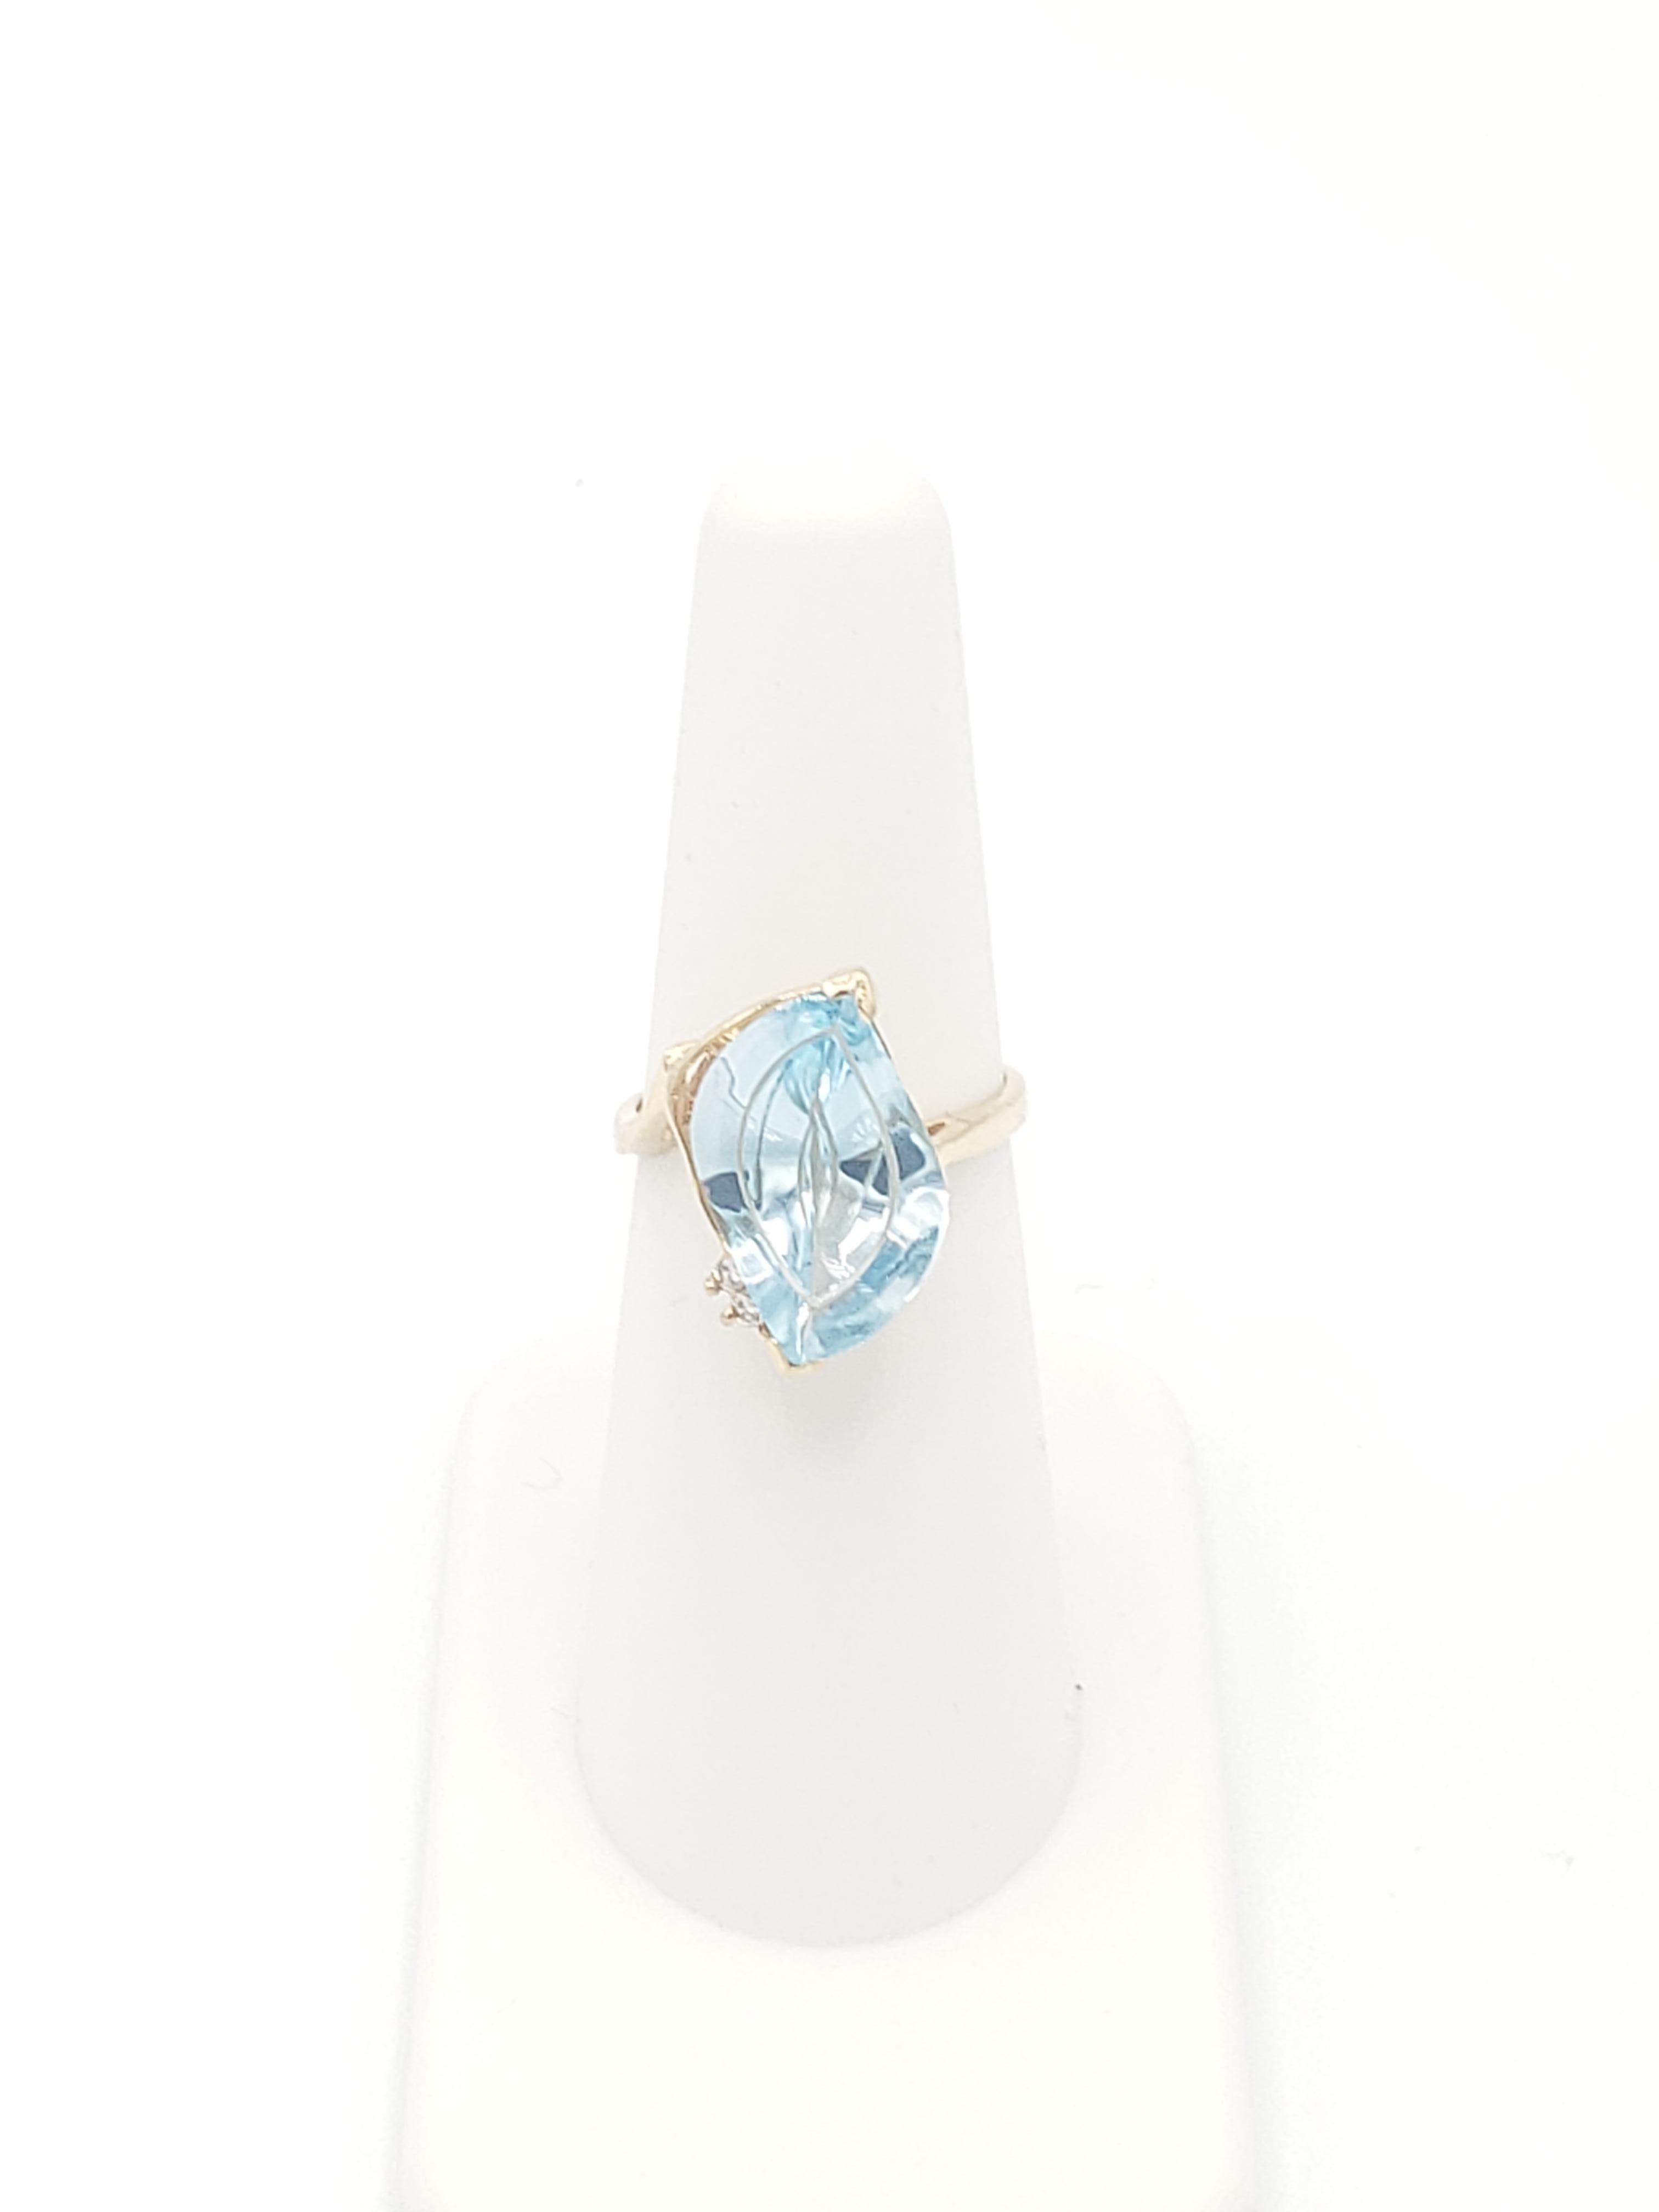 Cette magnifique bague Fantasy Cut présente une topaze bleue naturelle de 5 carats sertie dans un anneau en or jaune 14K massif. La bague est conçue dans un style couronne antique, avec des accents de diamants blancs et un poids total en carats de